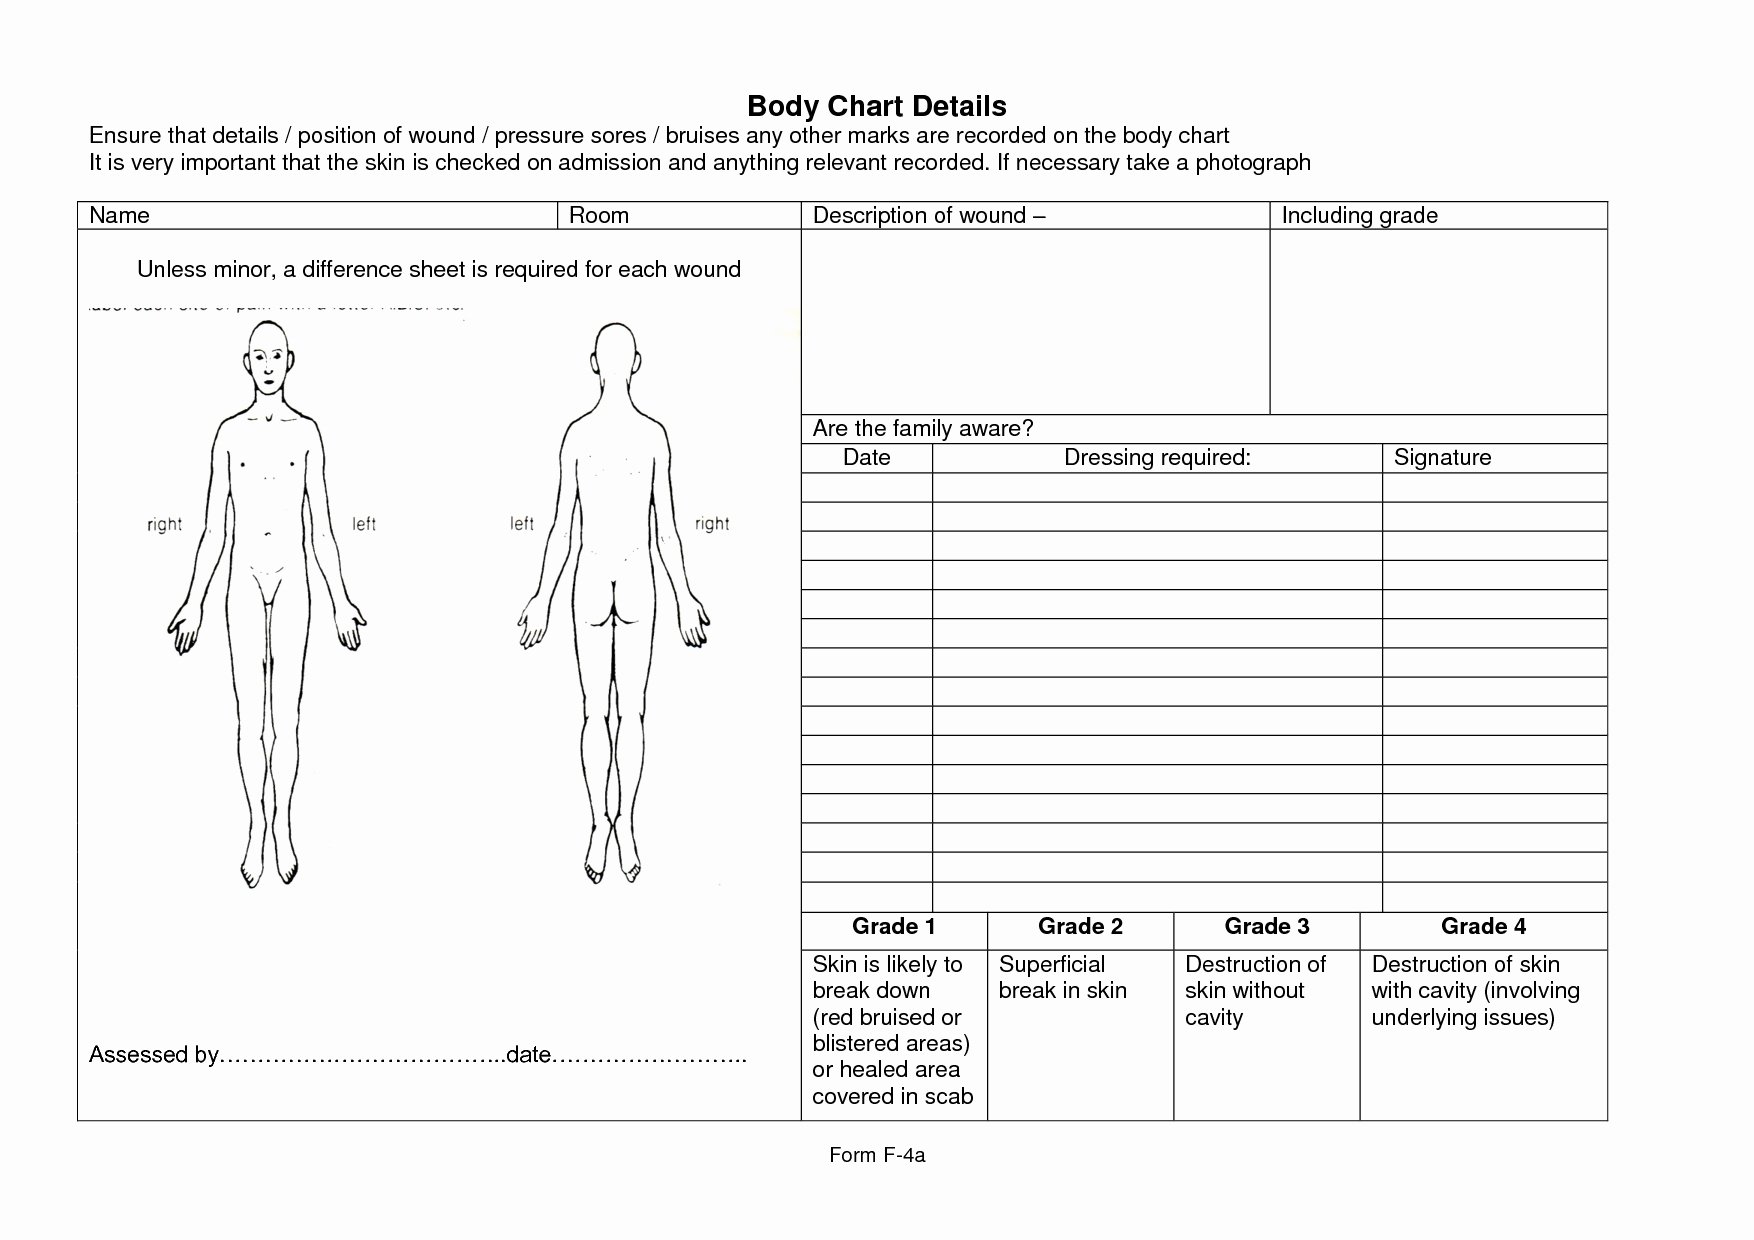 Nursing assessment Documentation Template New Wound assessment form Template 61af116e4cfd Proshredelite